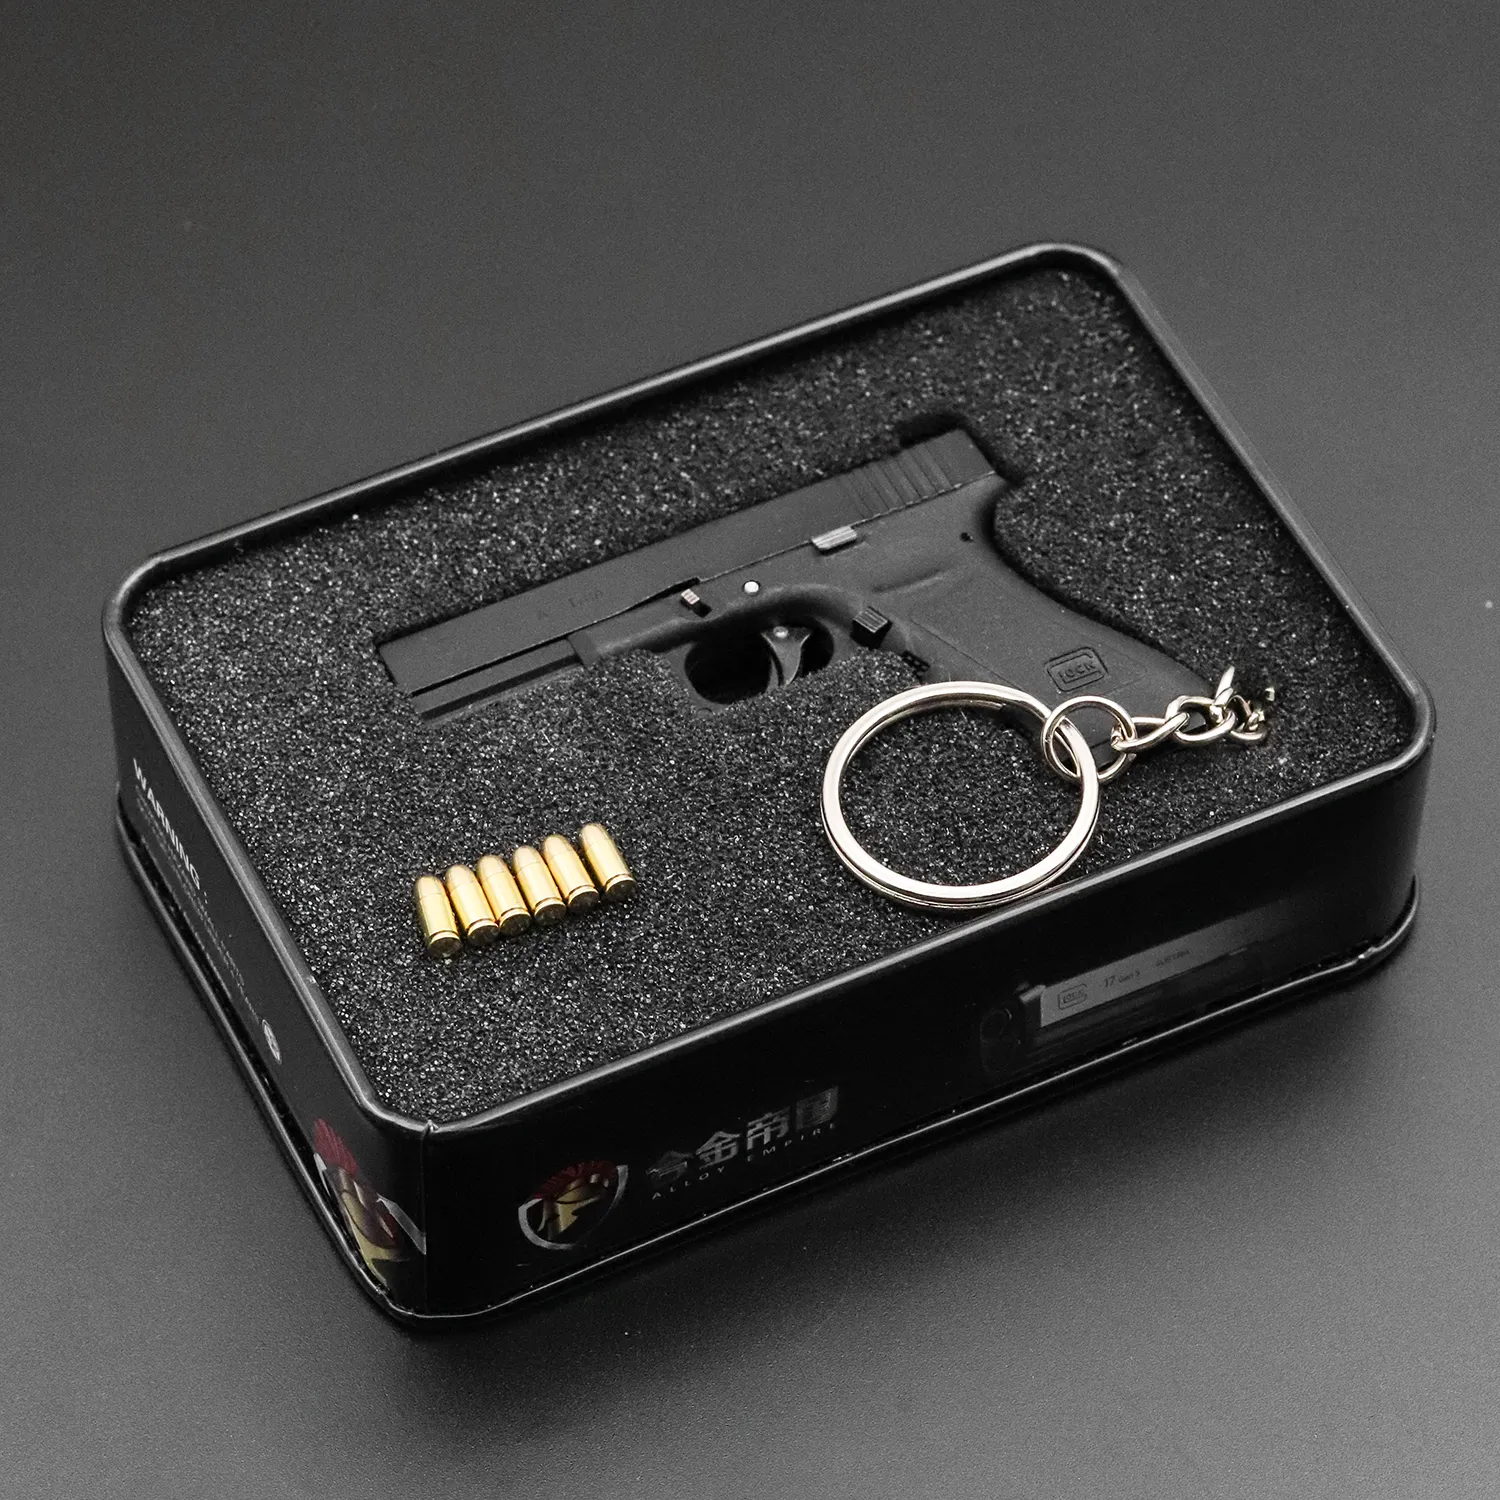 Metallo Glock G17 lega portachiavi pistola modello regalo ornamenti ciondolo portachiavi giocattolo